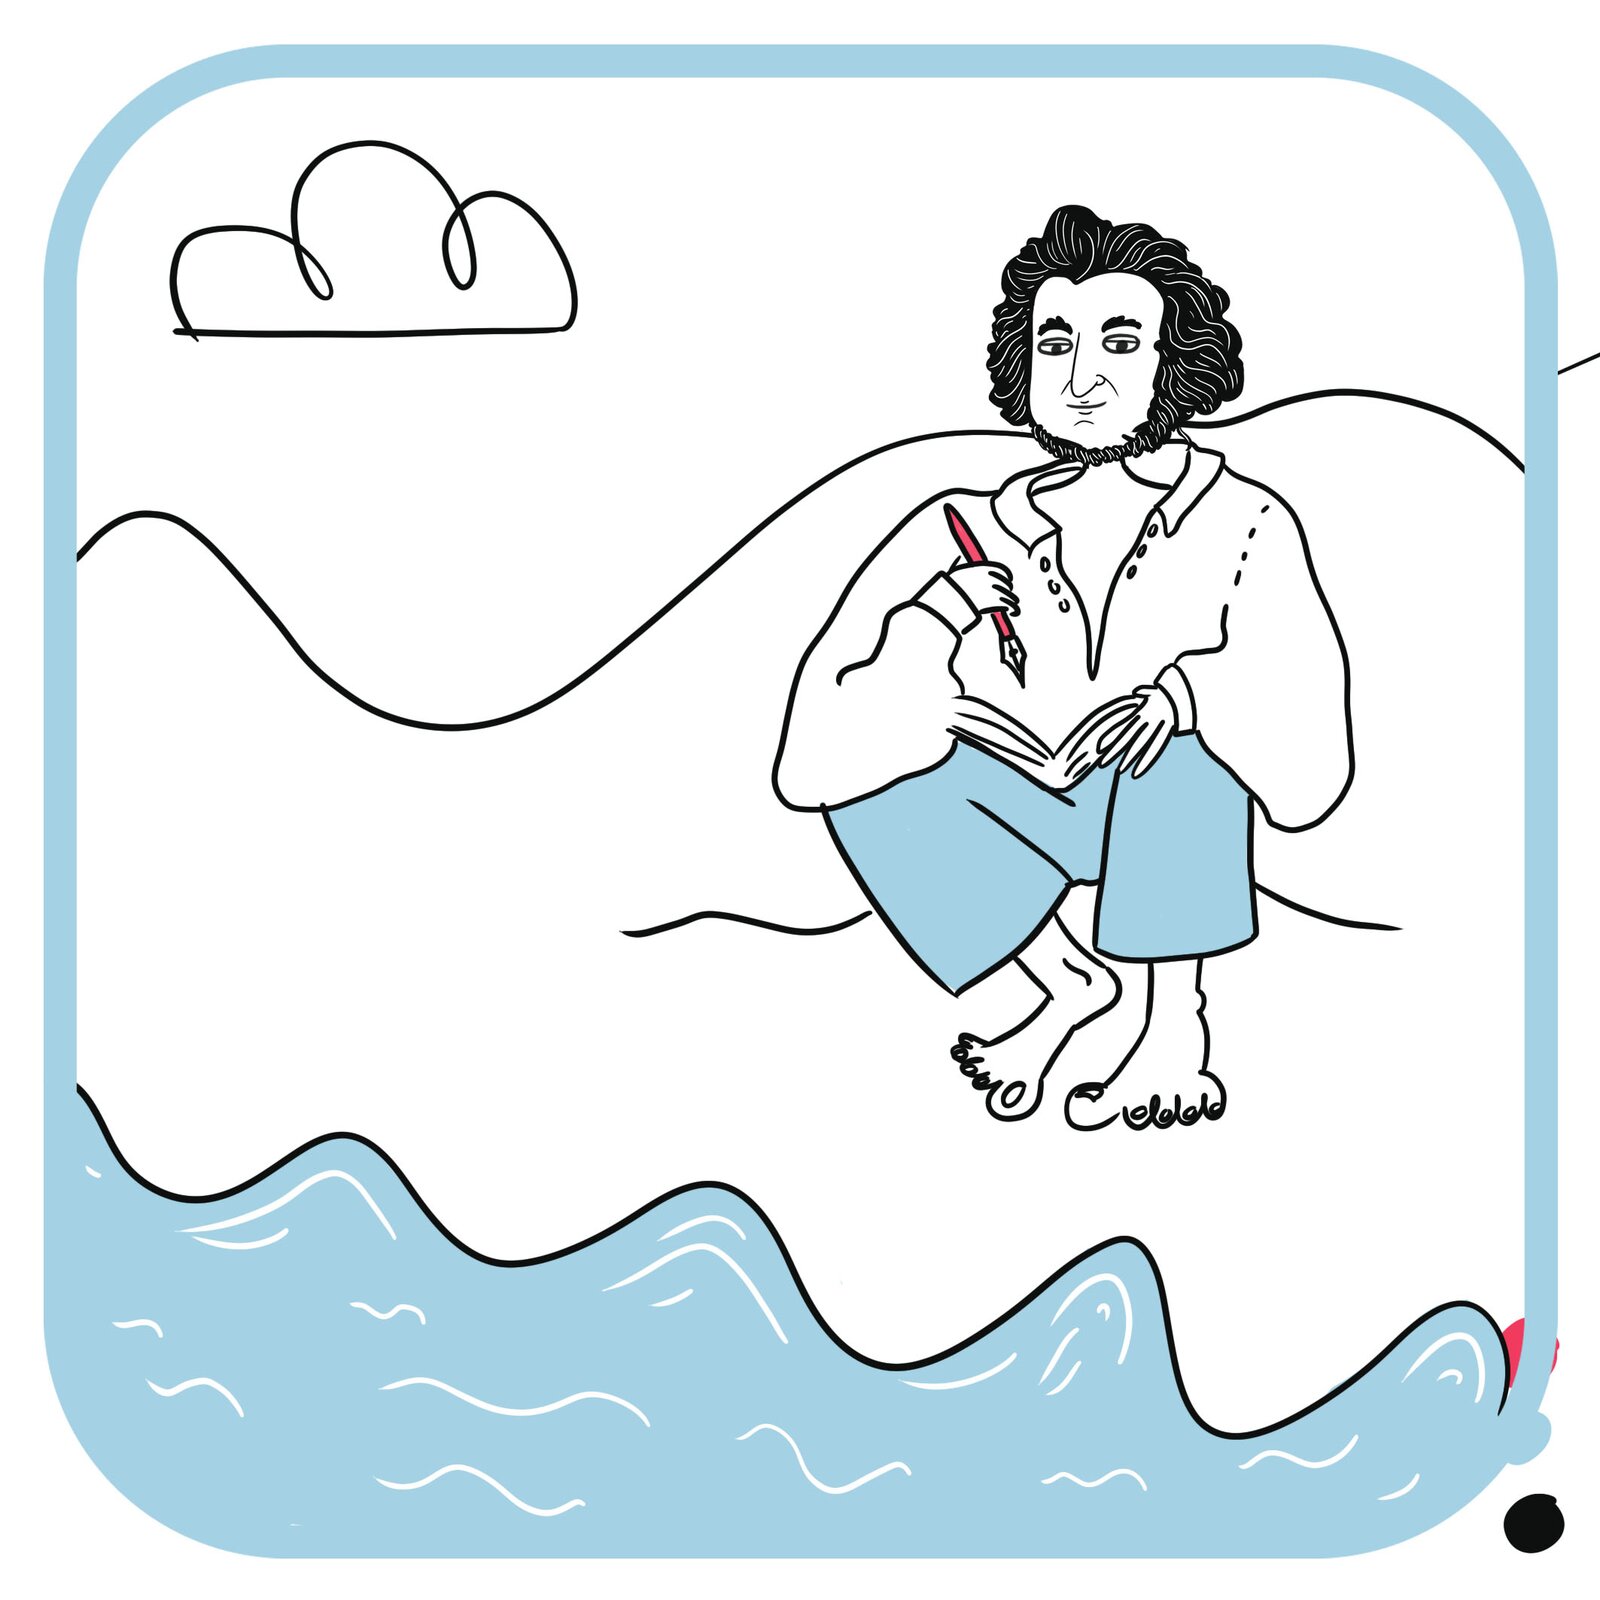 Adam Mickiewicz siedzi nad rzeką. Ma na sobie białą koszulę i błękitne spodnie. W rękach trzyma pióro i kartki. Nad nim widać niebo z białym obłokiem.